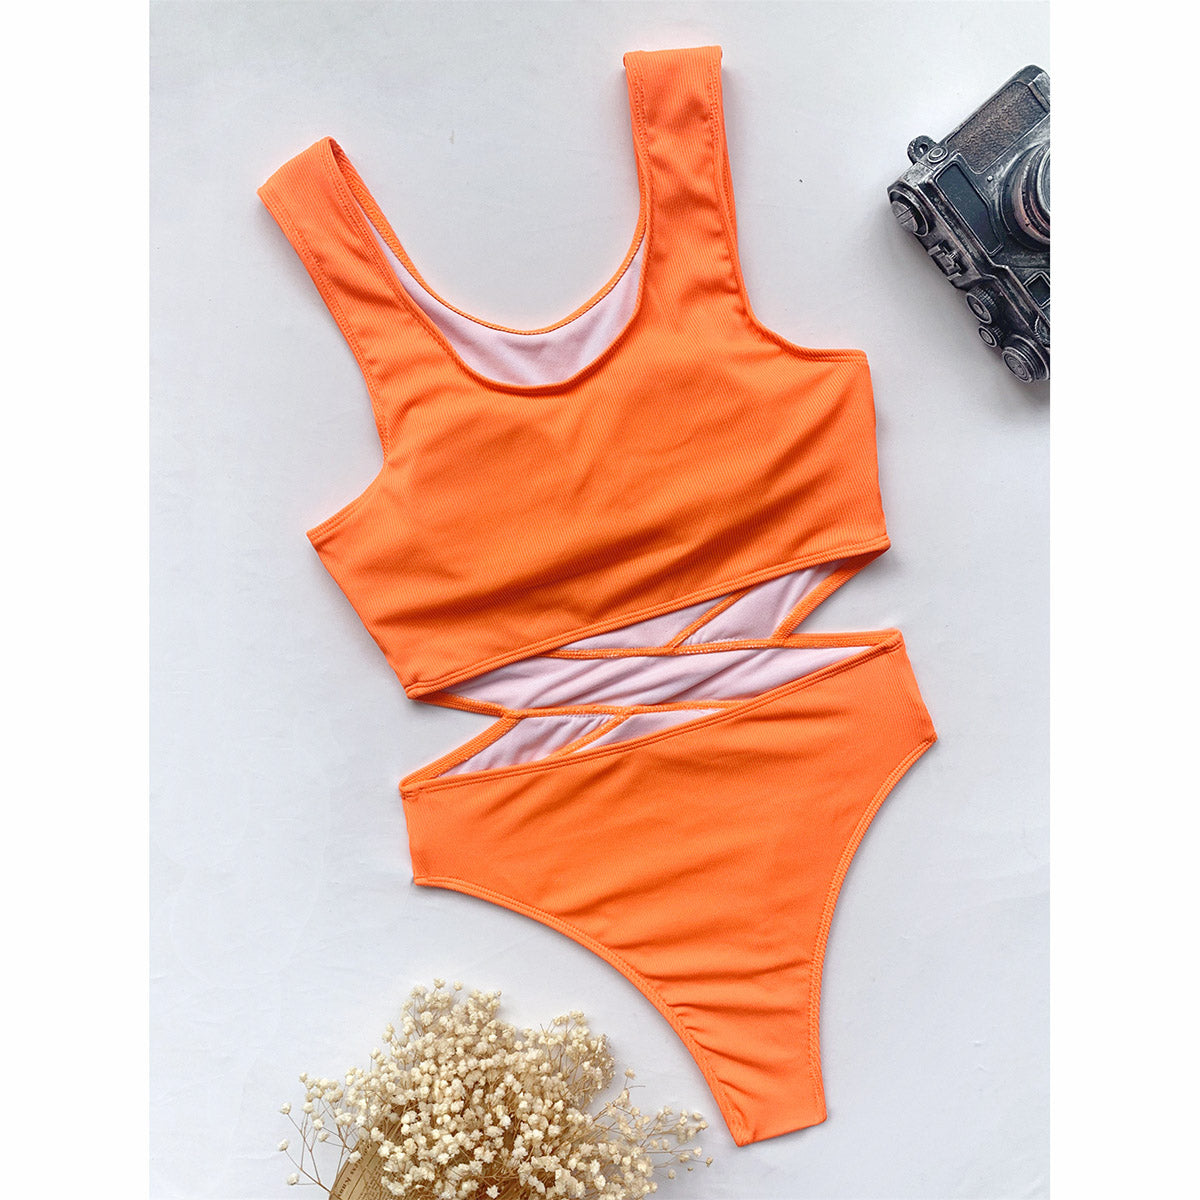 One Piece Swimsuit Solid Swimwear Thong Bandage Bathing Suit Monokini Bathing Suit Beachwear The Clothing Company Sydney